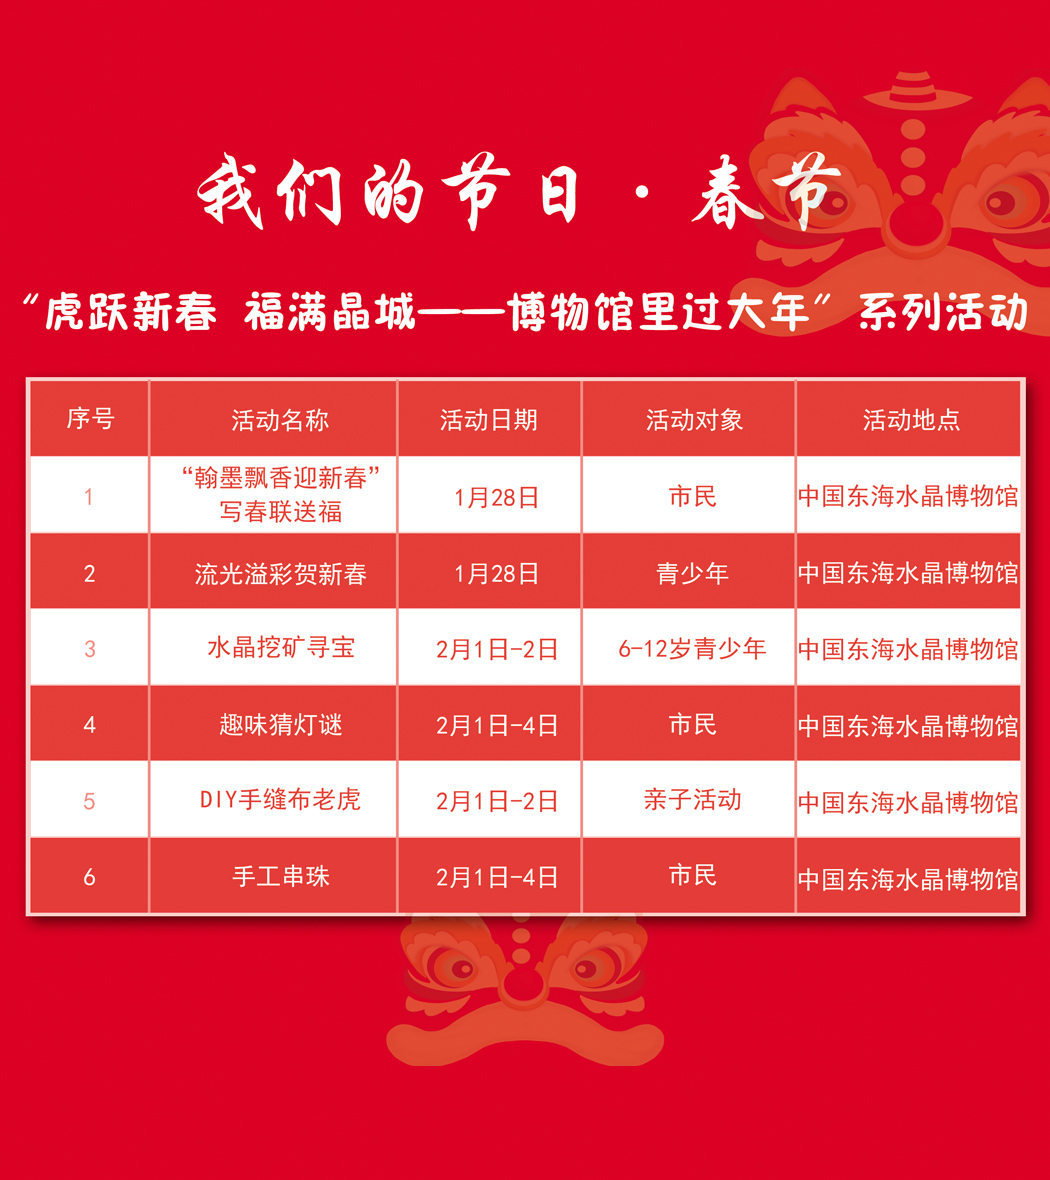 “虎跃新春 福满晶城”博物馆里过大年，新年活动与春节期间开馆公告